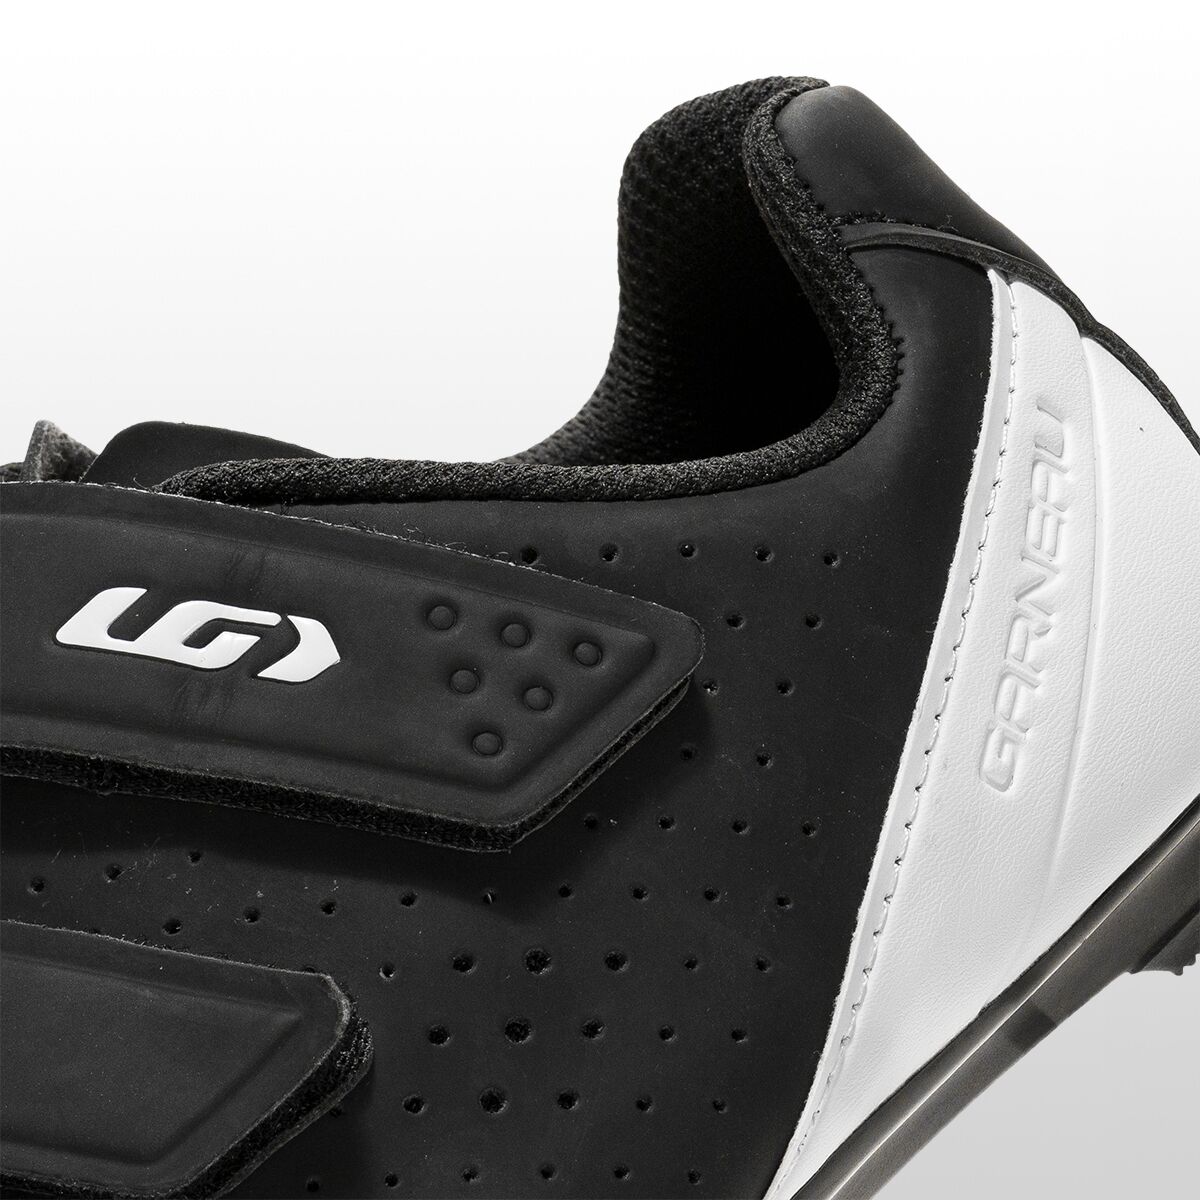 louis garneau chrome ii cycling shoes - 3-hole, spd